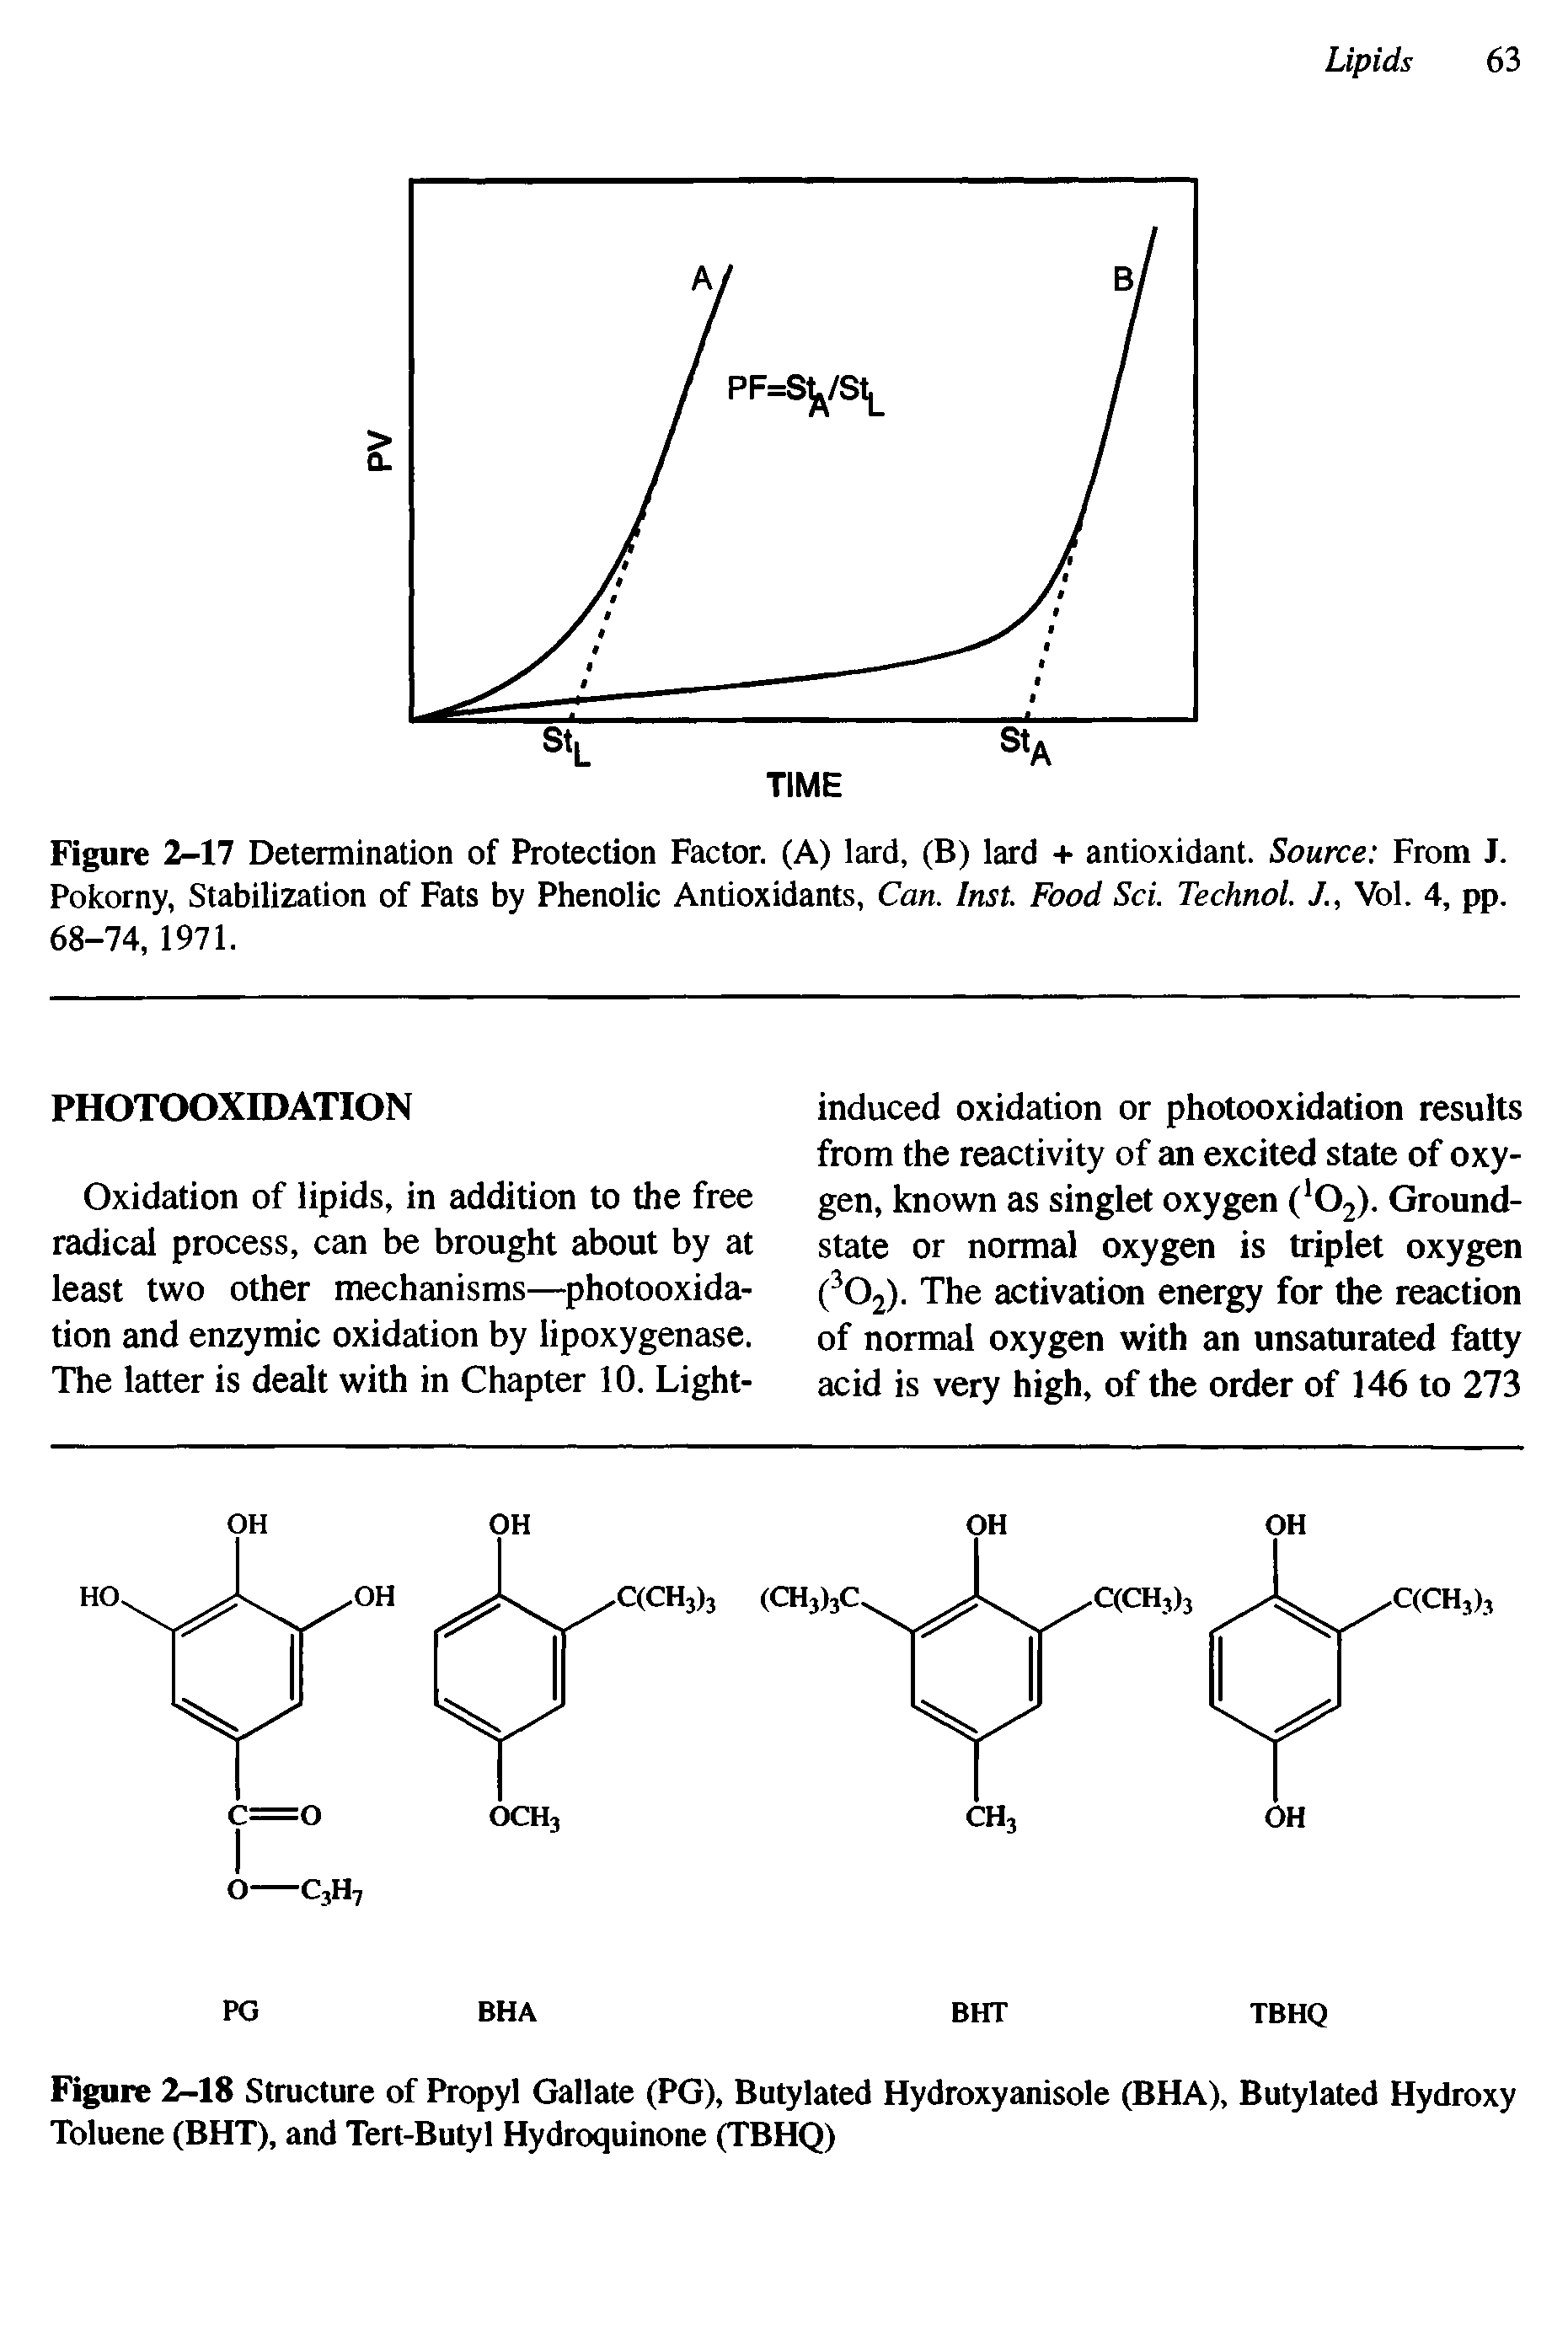 Figure 2-18 Structure of Propyl Gallate (PG), Butylated Hydroxyanisole (BHA), Butylated Hydroxy Toluene (BHT), and Tert-Butyl Hydroquinone (TBHQ)...